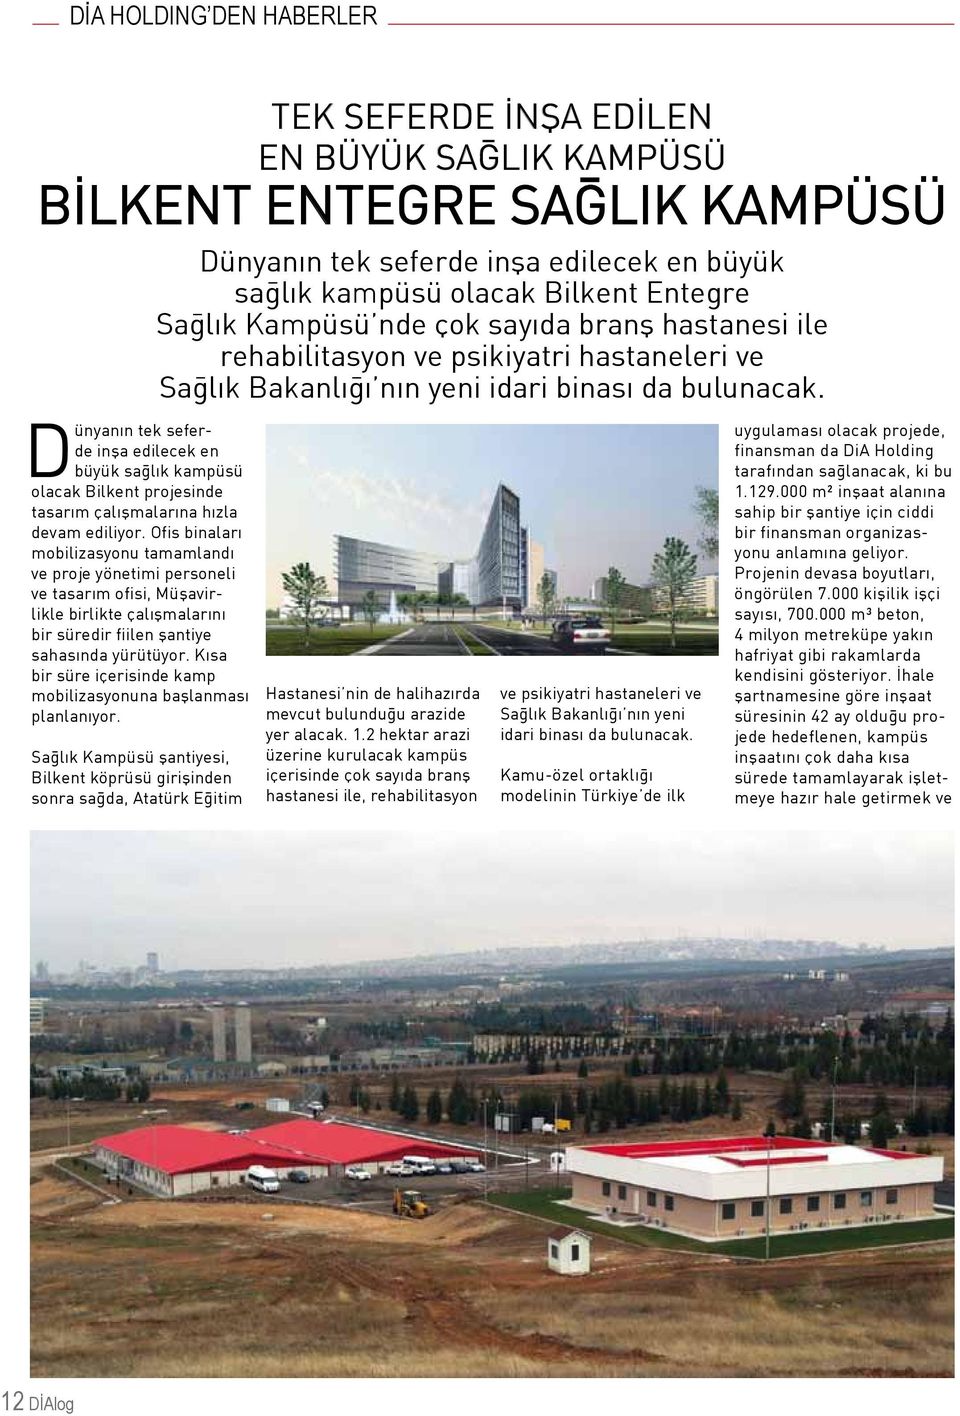 Dünyanın tek seferde inşa edilecek en büyük sağlık kampüsü olacak Bilkent projesinde tasarım çalışmalarına hızla devam ediliyor.